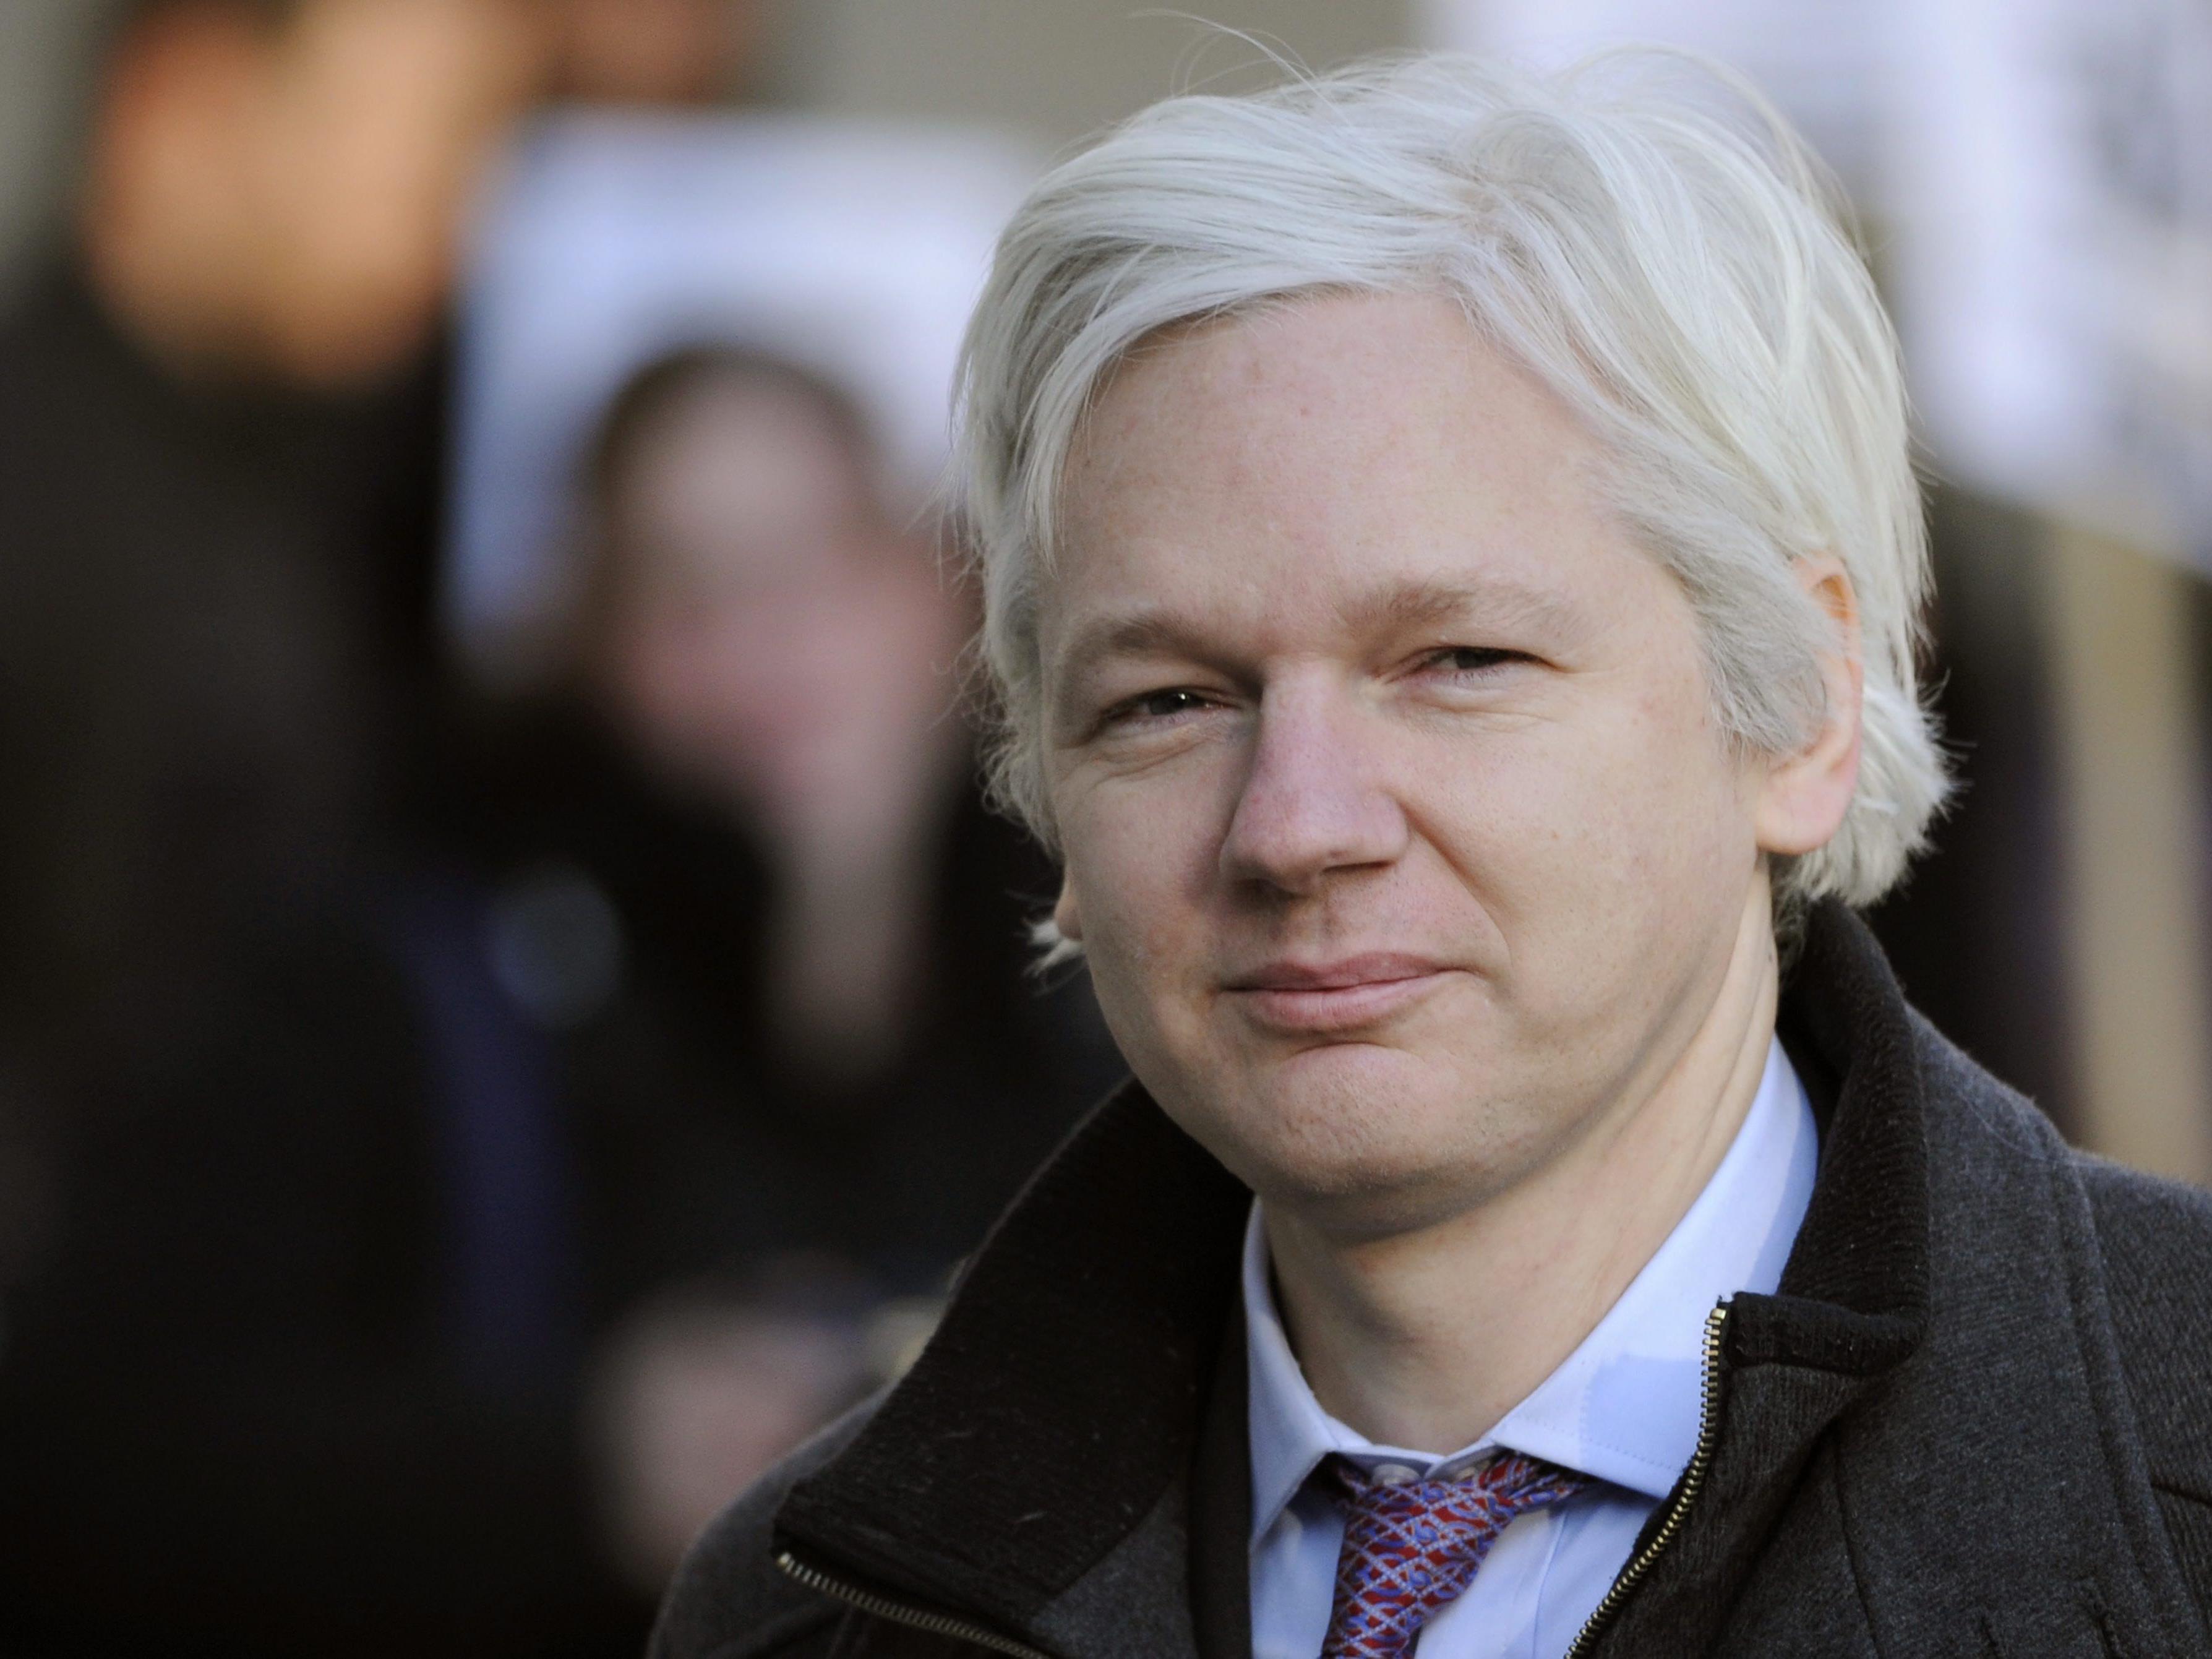 Assange scheitert mit Antrag auf Überprüfung des Auslieferungsentscheids an Schweden.